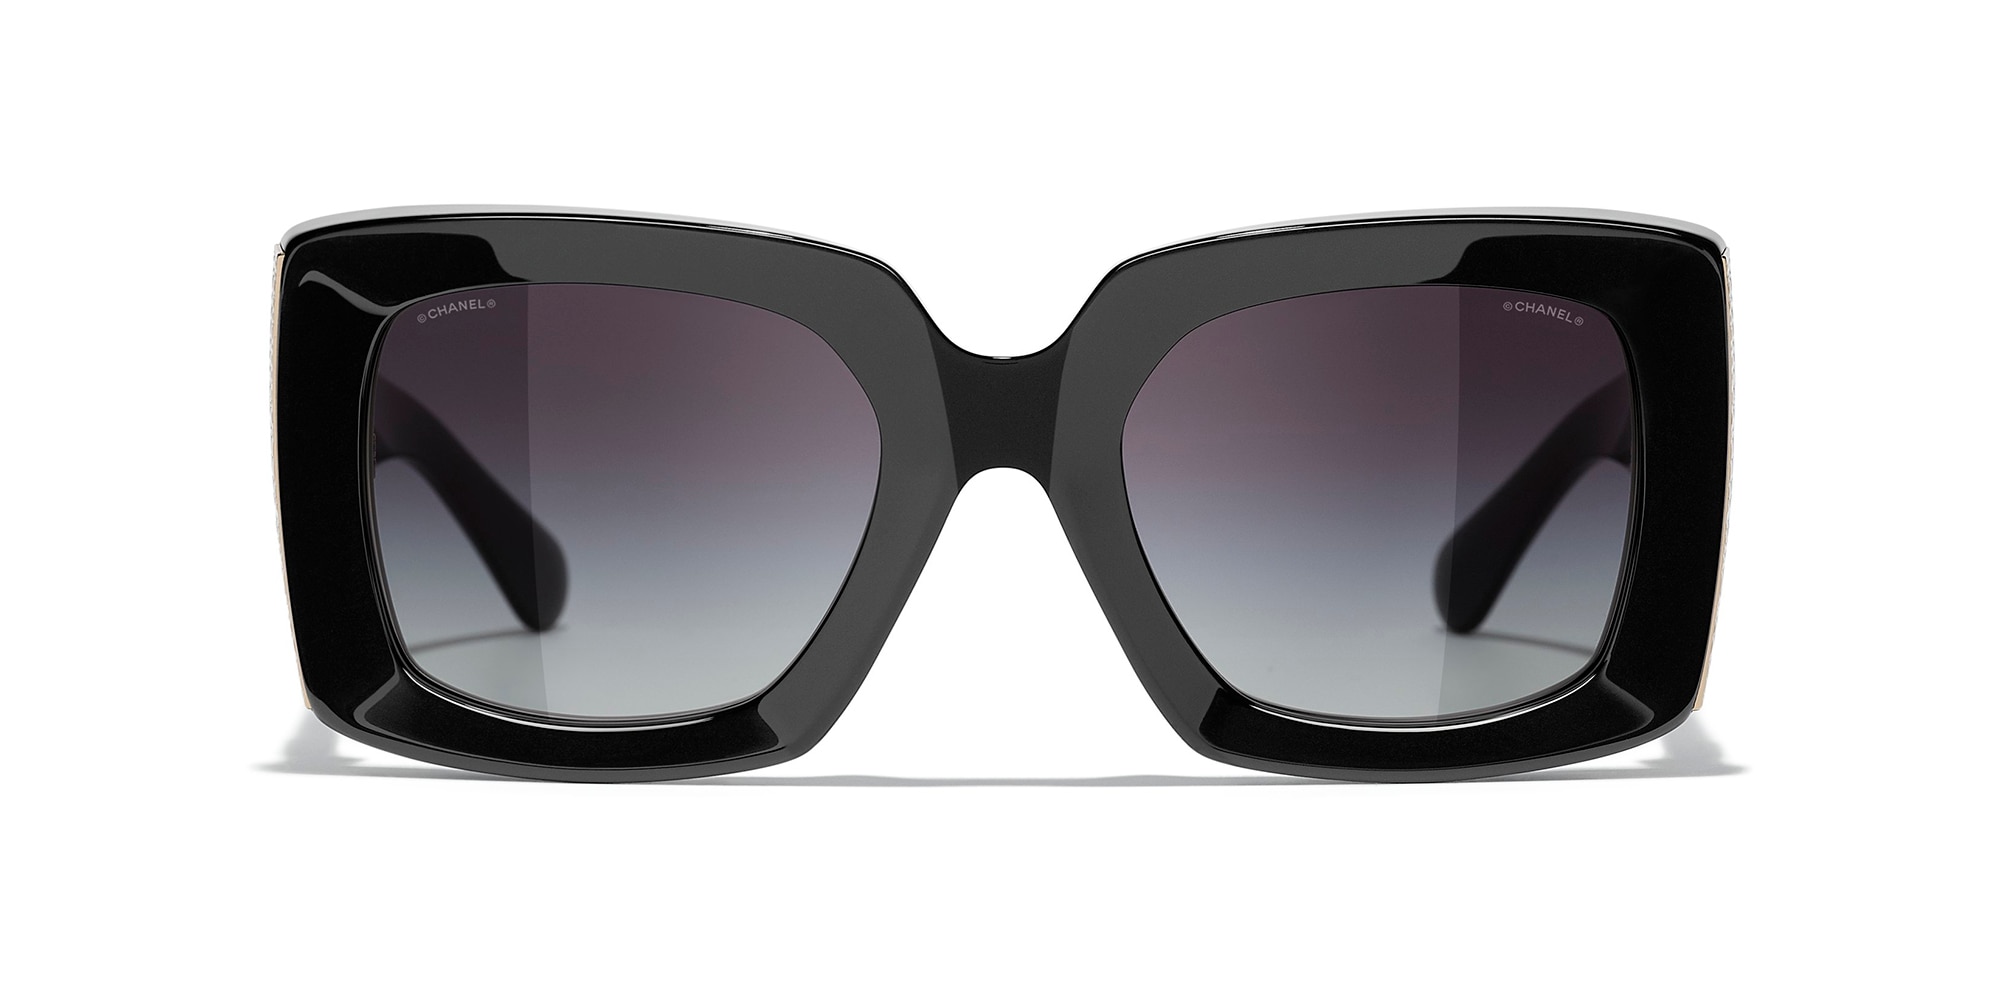 Sunglasses Pilot Sunglasses metal  diamantés  Fashion  CHANEL